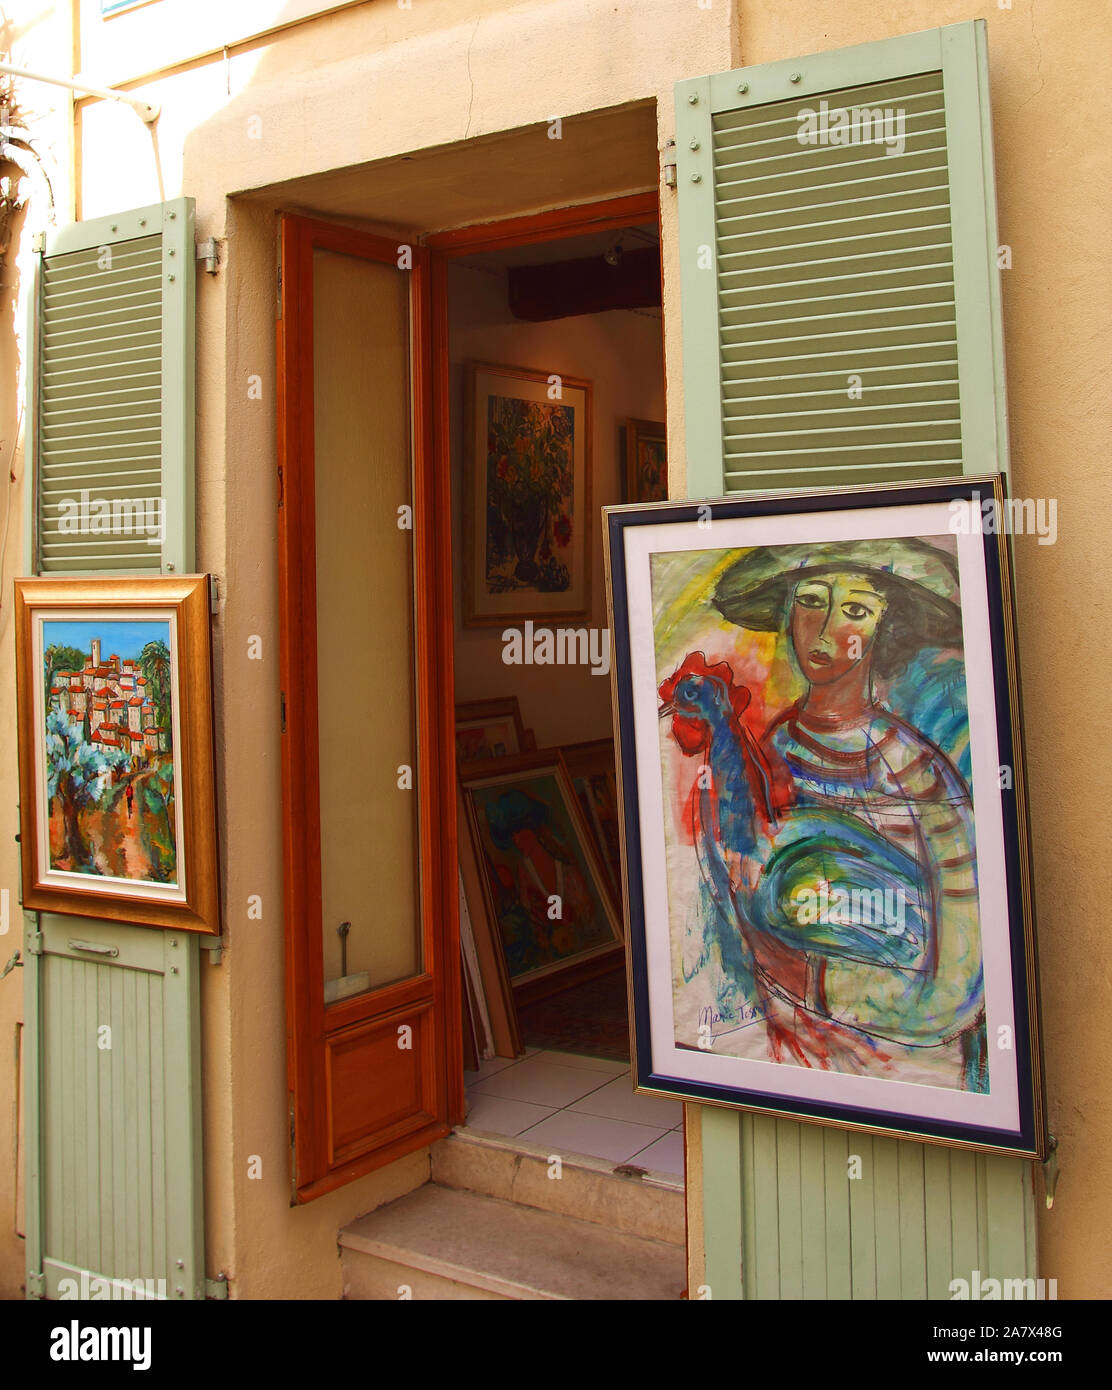 Façade de la galerie d'art dans le village de Mougins sur la Côte d'Azur, France Banque D'Images